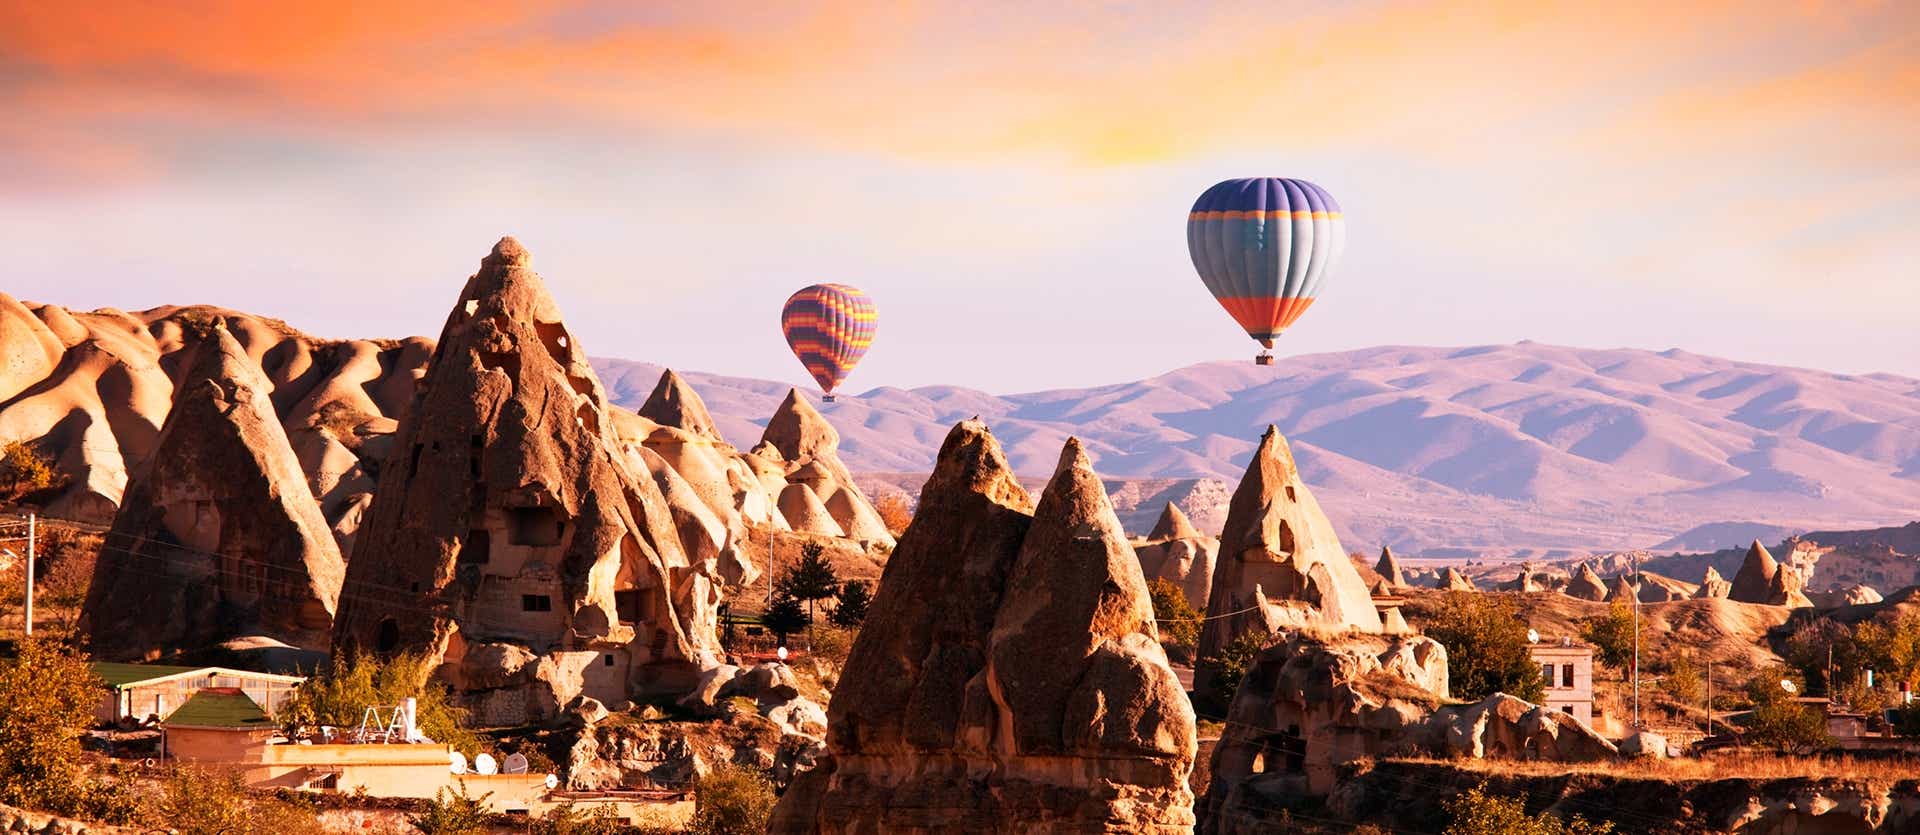 Hot Air Ballons <span class="iconos separador"></span> Cappadocia <span class="iconos separador"></span> Turkey